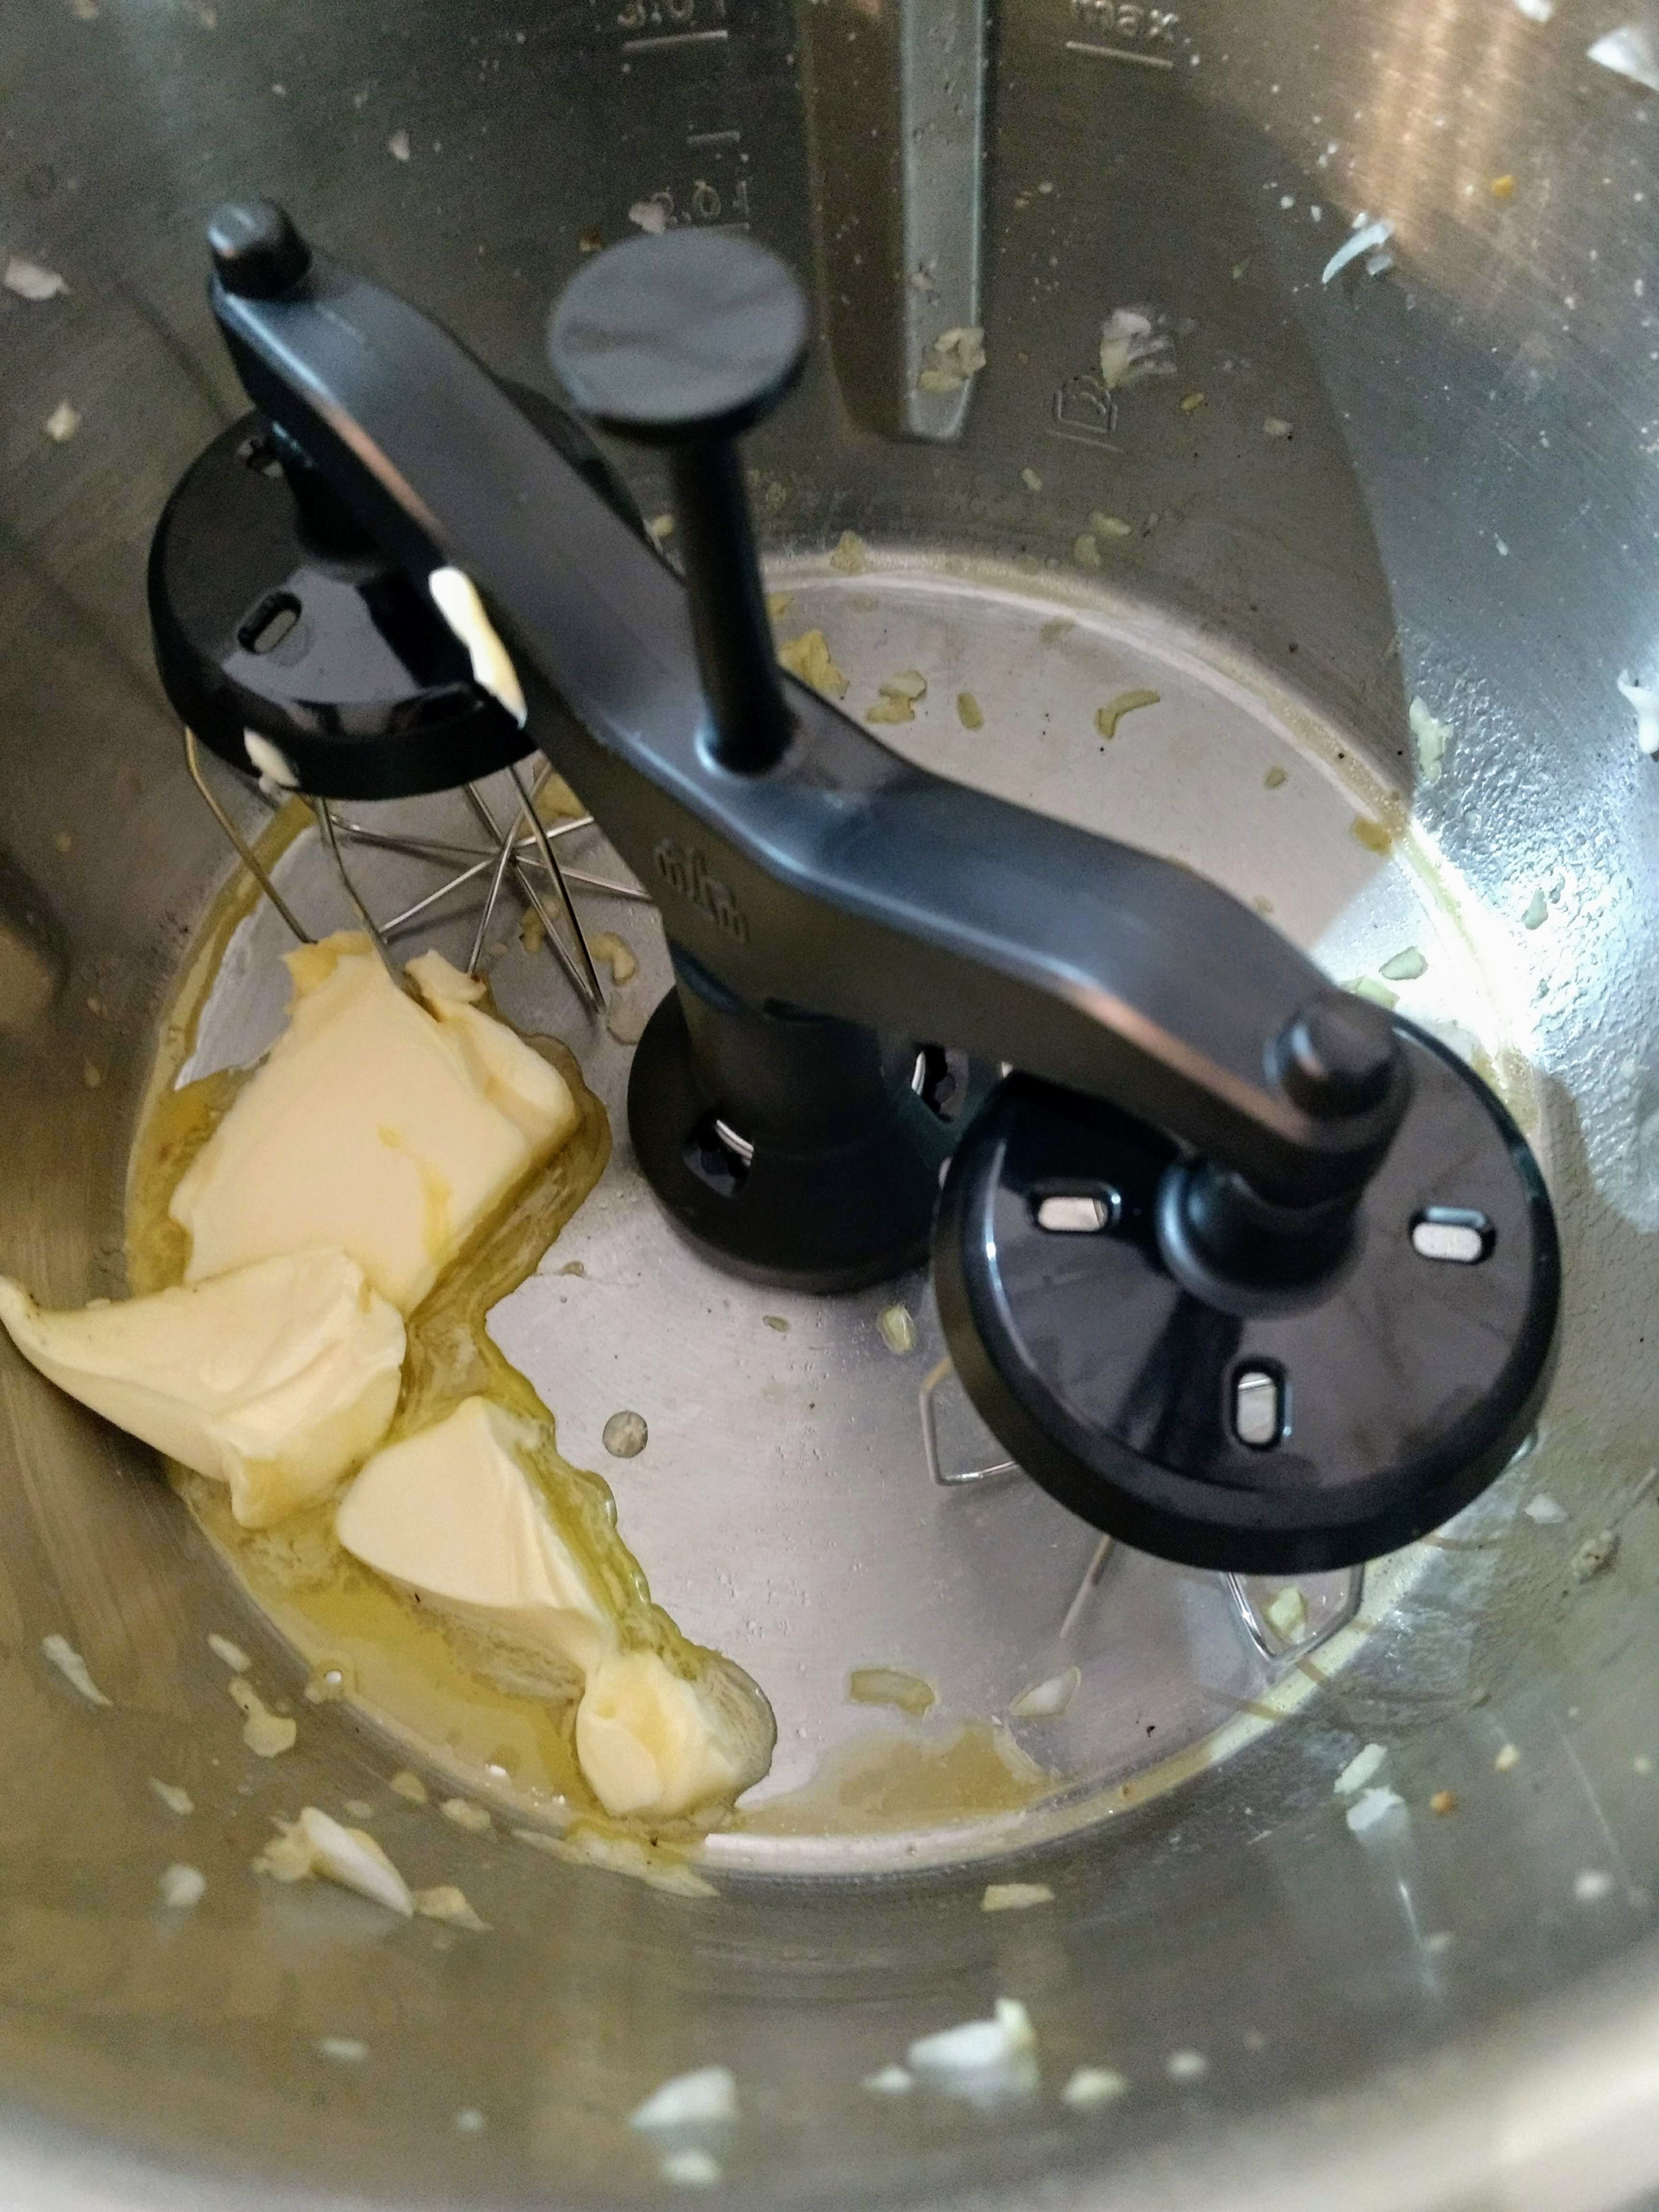 Das Automatikprogramm für Béchamel wählen. Den Zwillingsrührbesen einsetzen. 40 g Butter einwiegen, den Deckel ohne Messbecher schließen und Butter zerlaufen lassen (Zwillingsrührbesen | Stufe 1 | 60 °C | 2 Min.).